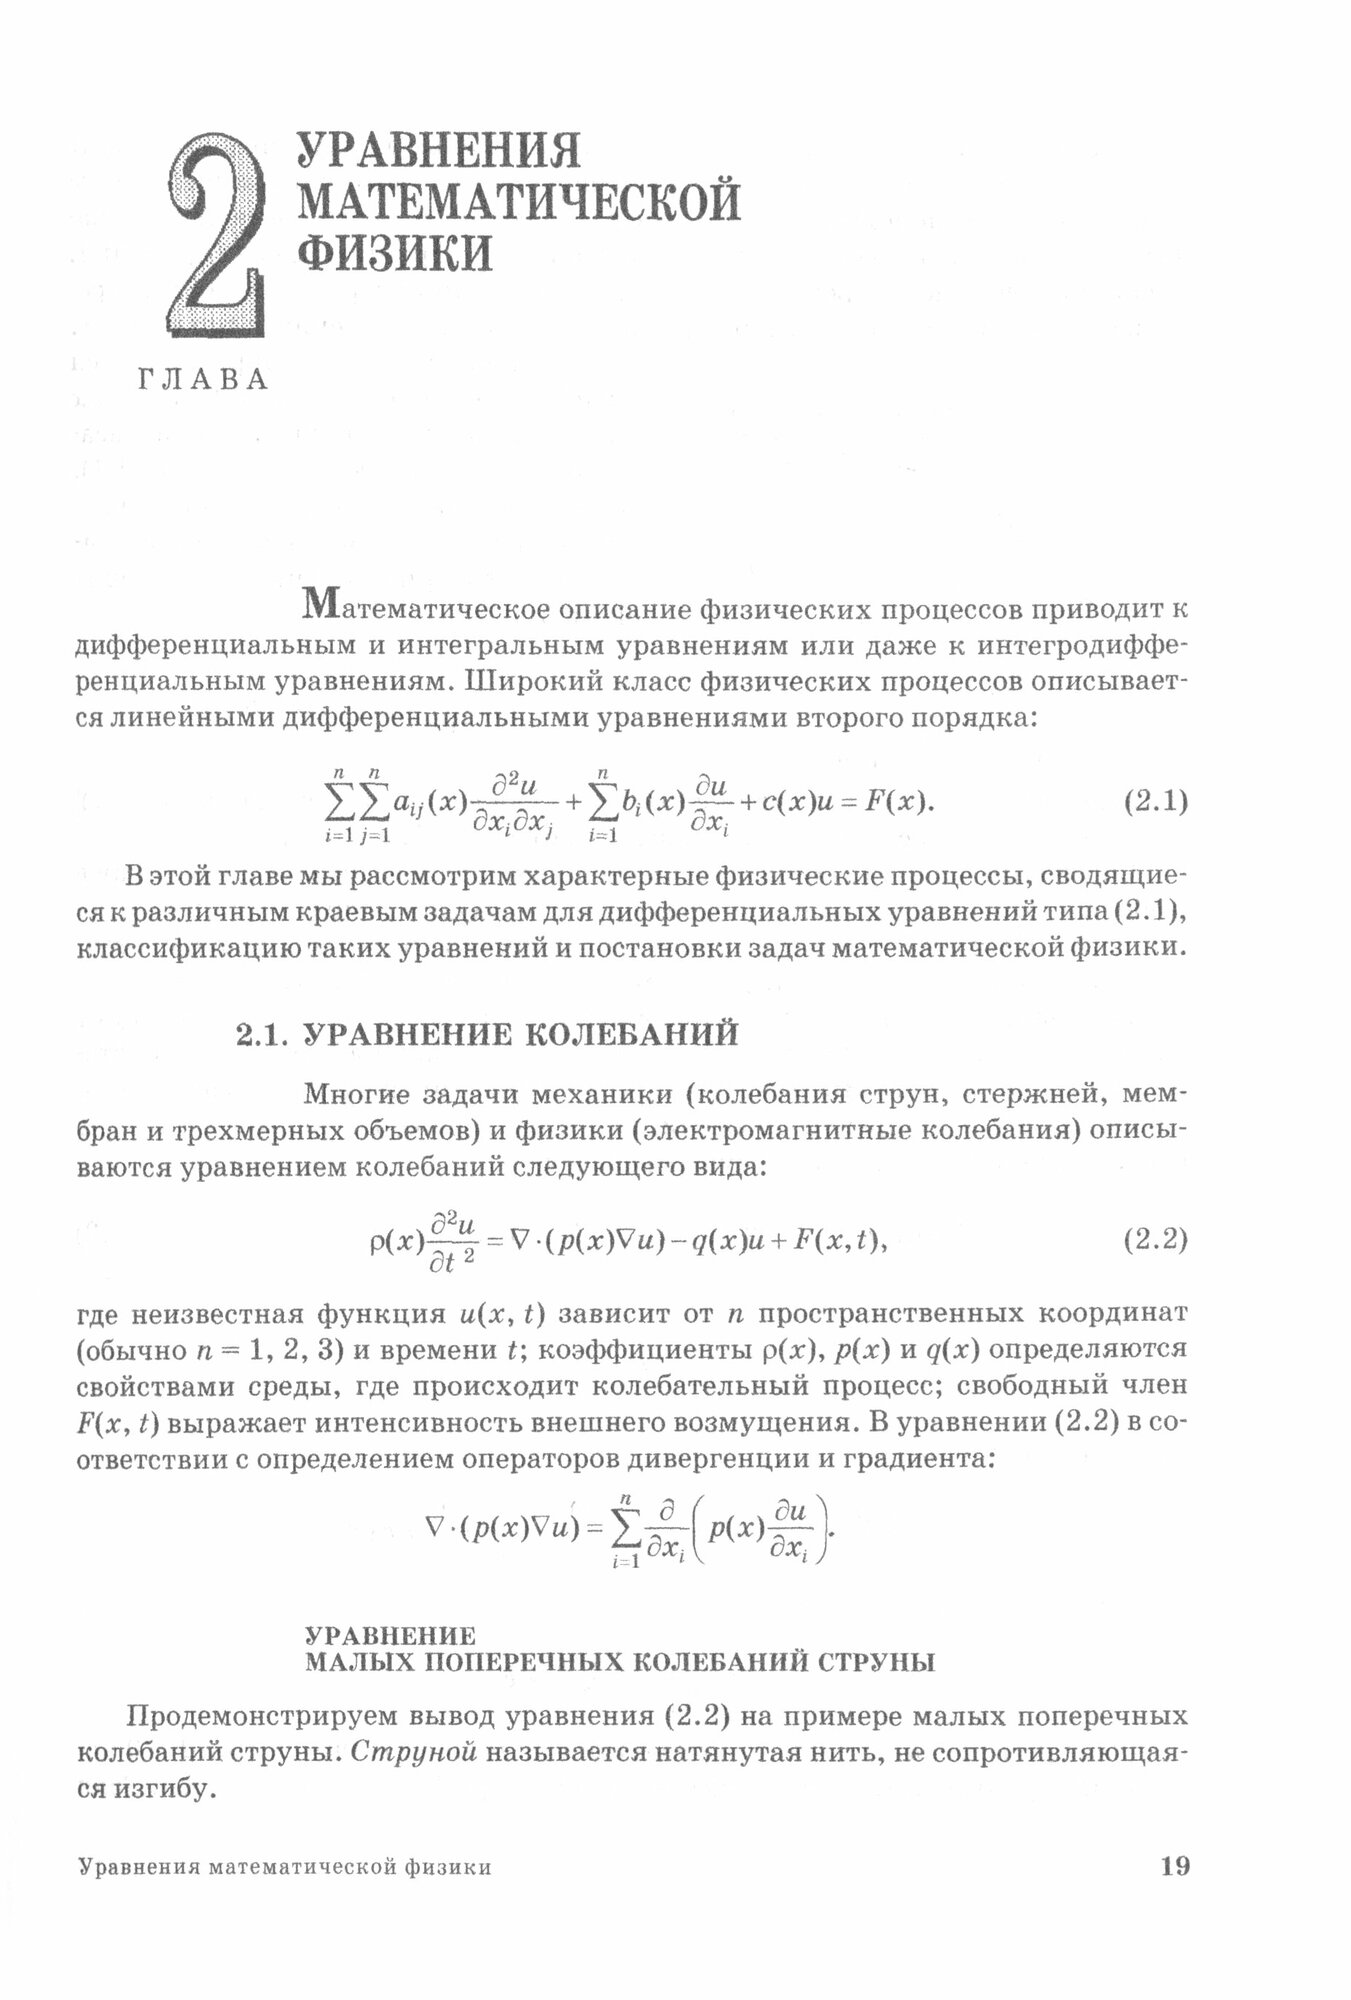 Курс математической физики с использованием пакета Maple. Учебное пособие - фото №3